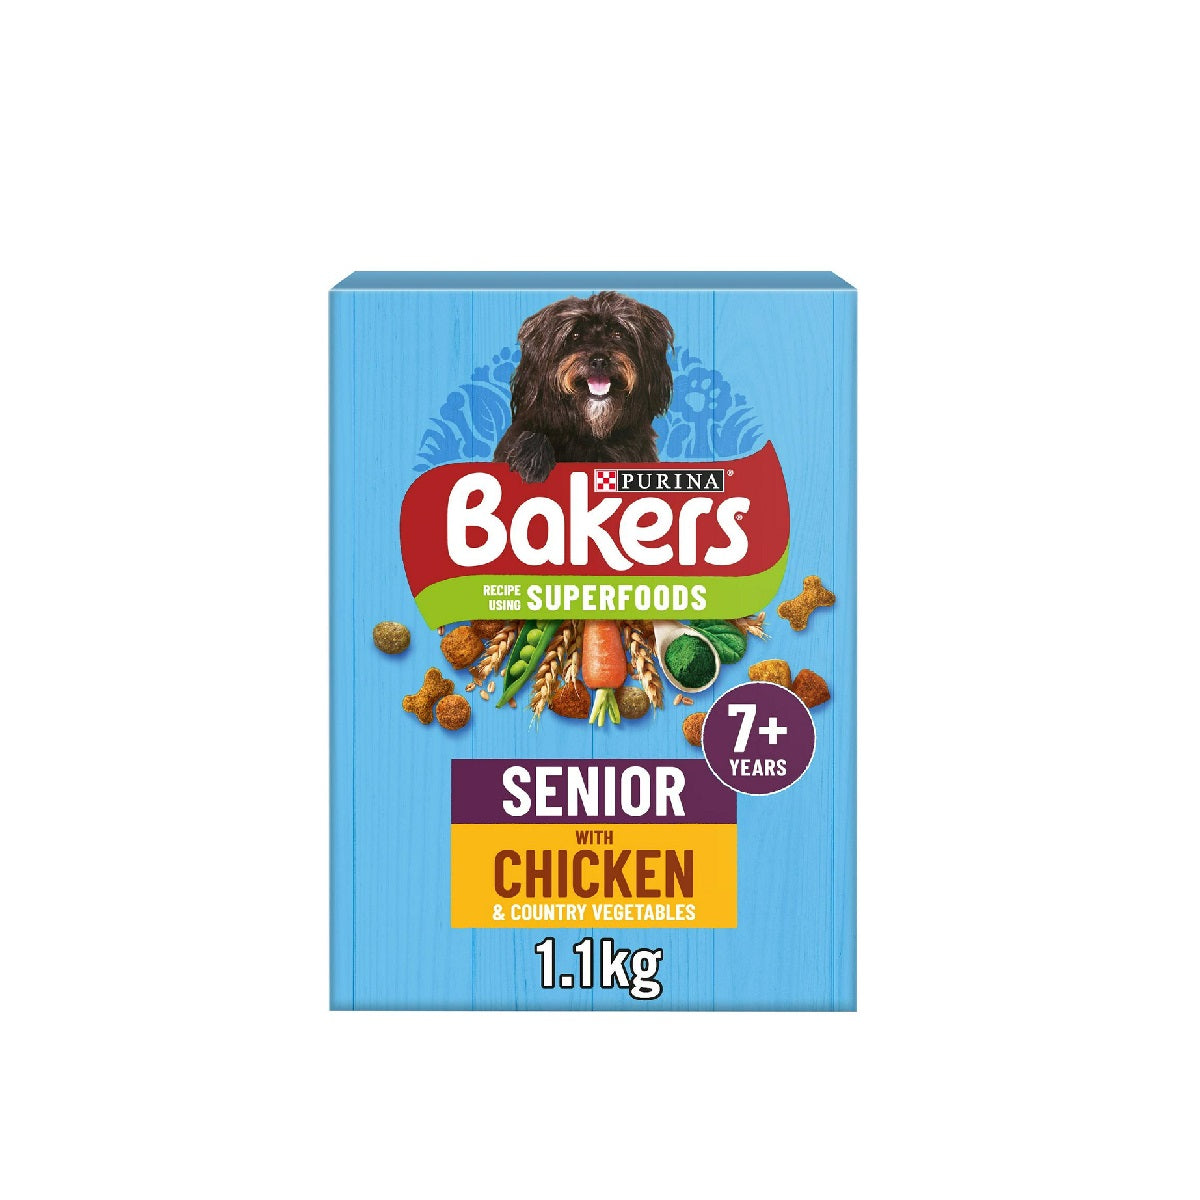 Bakers - Senior